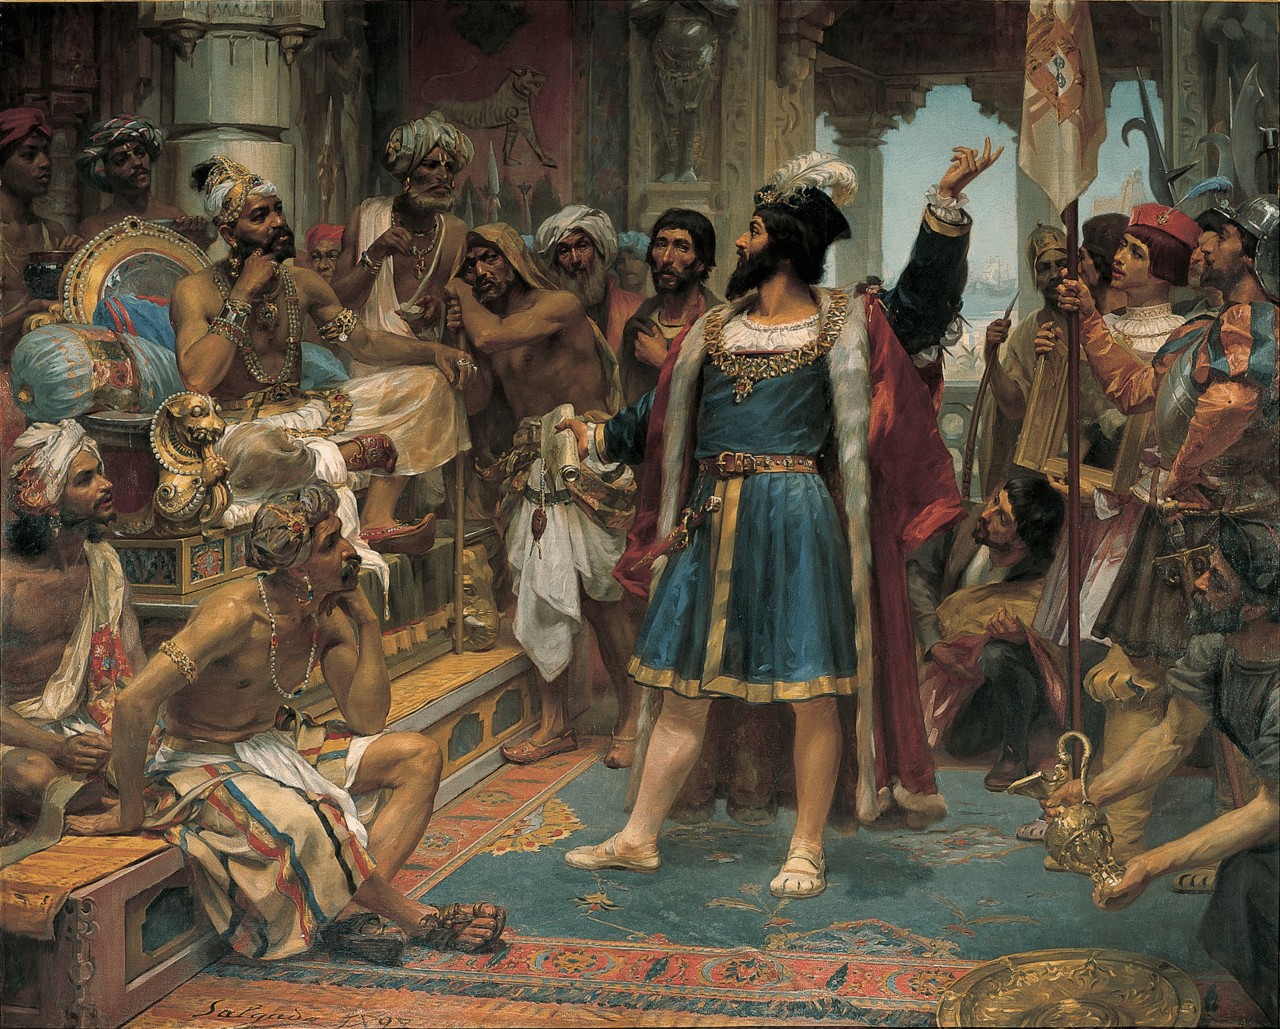 Vasco da Gama before Calicut